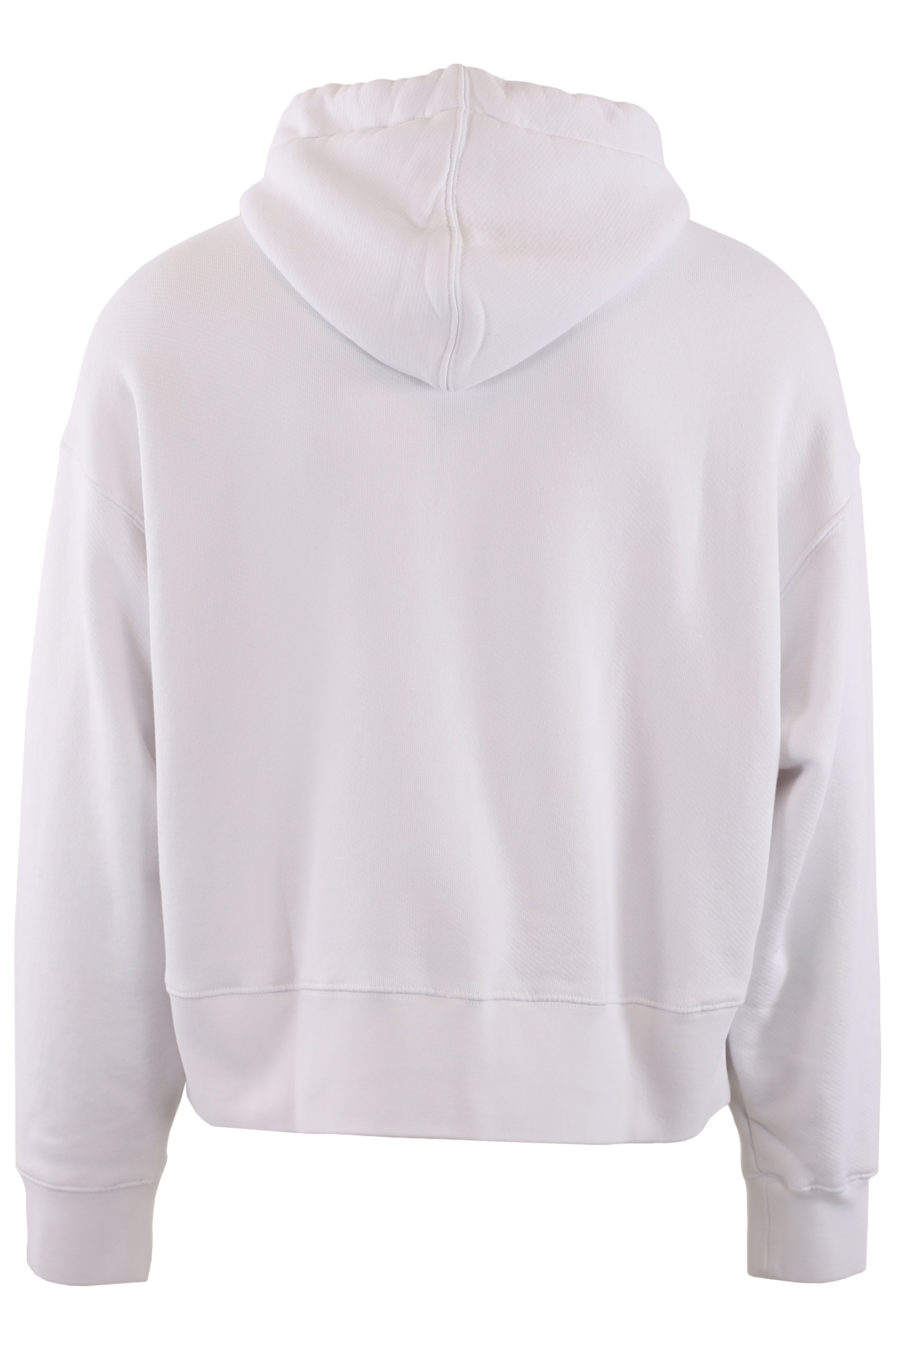 Weißes Kapuzensweatshirt mit Aufdruck - IMG1 9222